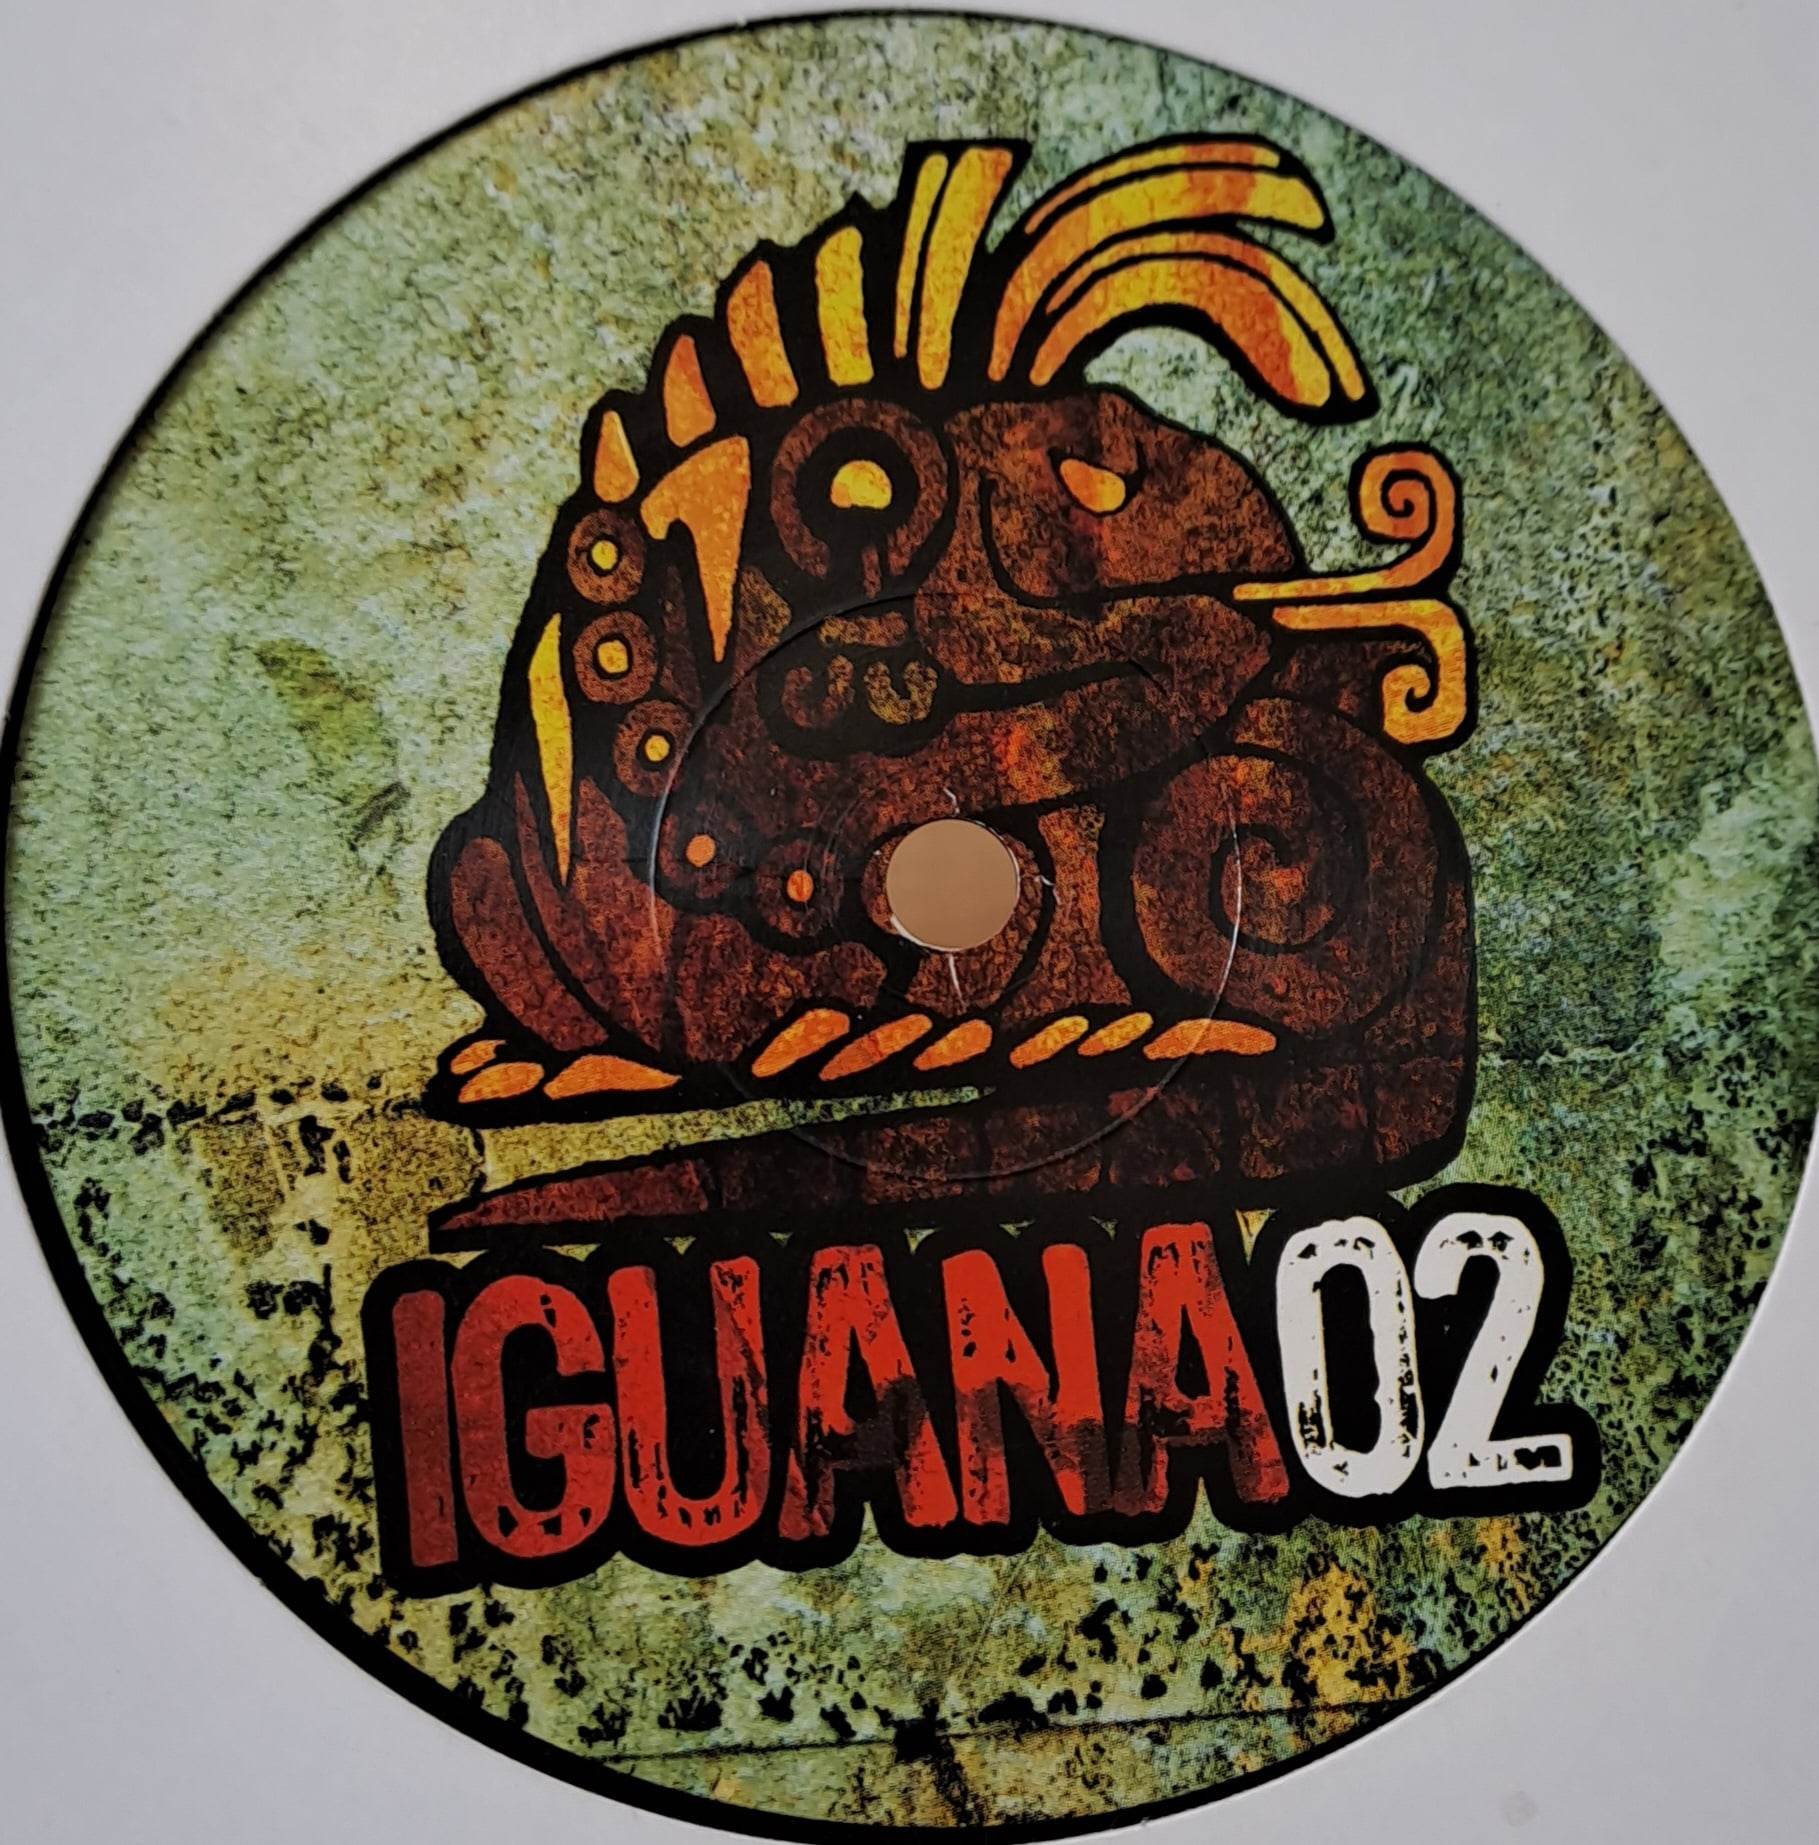 Iguana 02 - vinyle techno